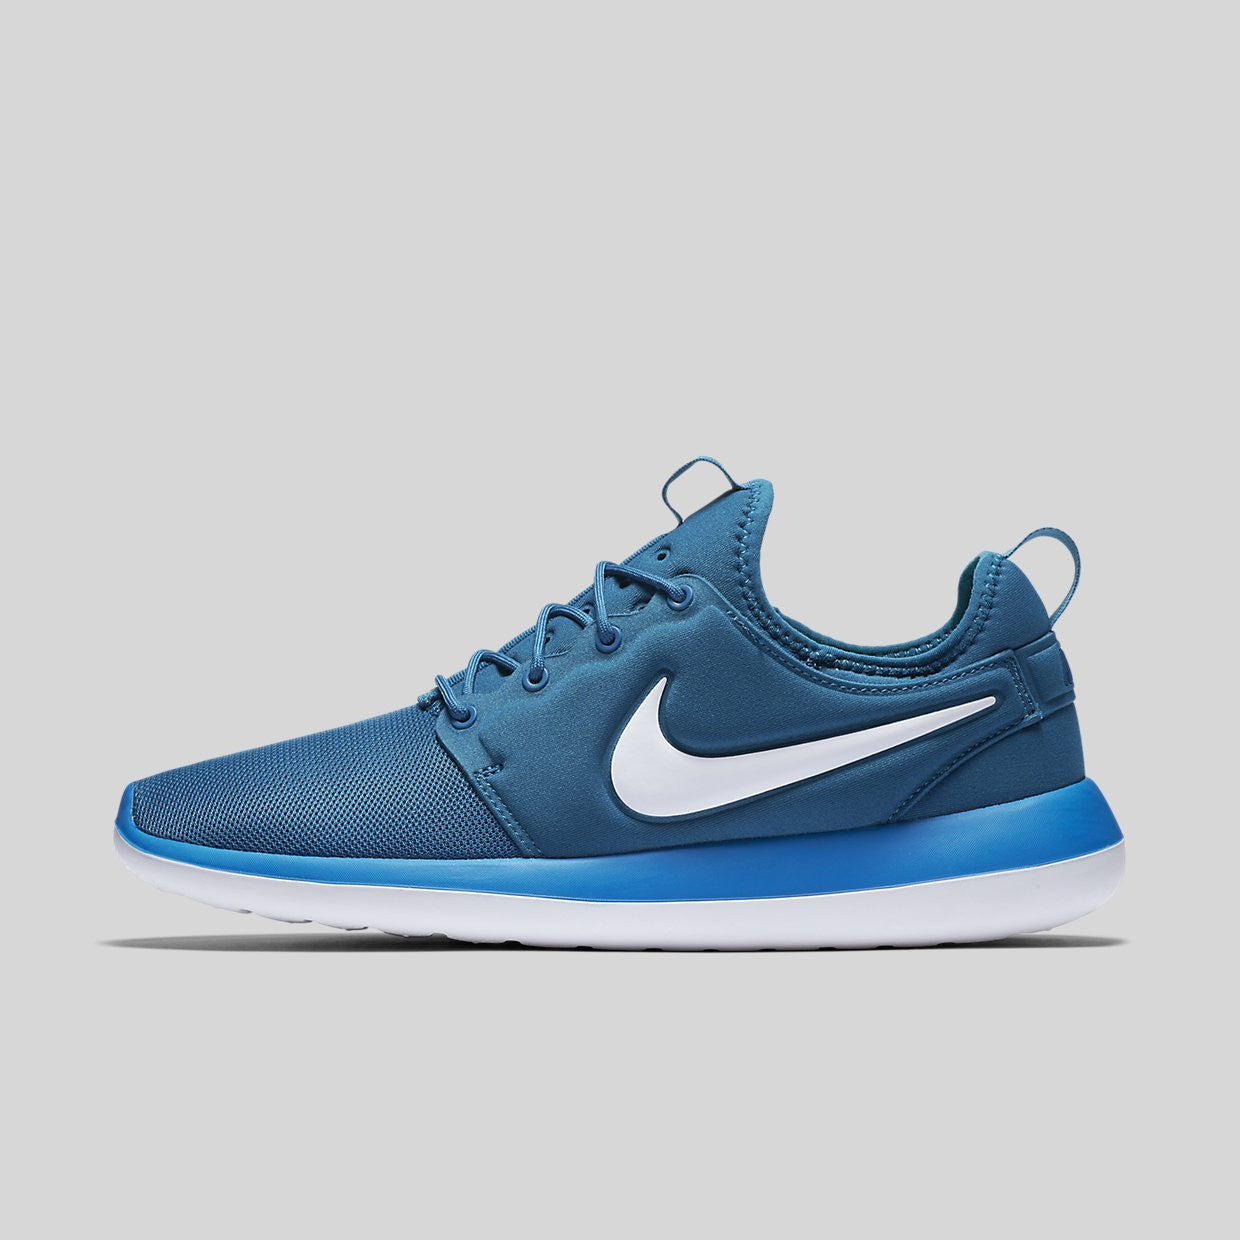 Nike Roshe Two Industrial Blue White 